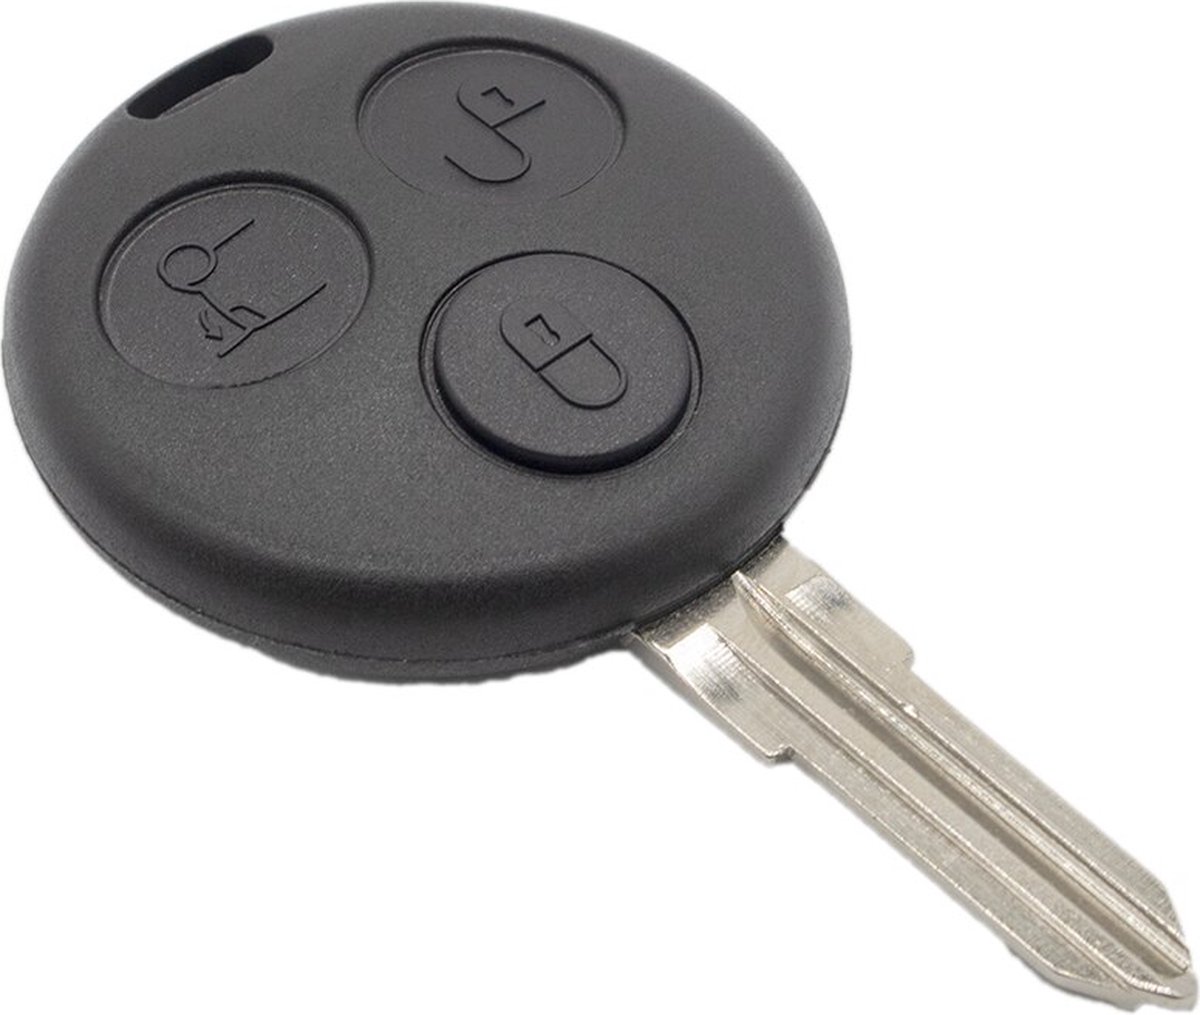 Clé de voiture 2 boutons + Batterie Sony CR2016 adaptée pour clé